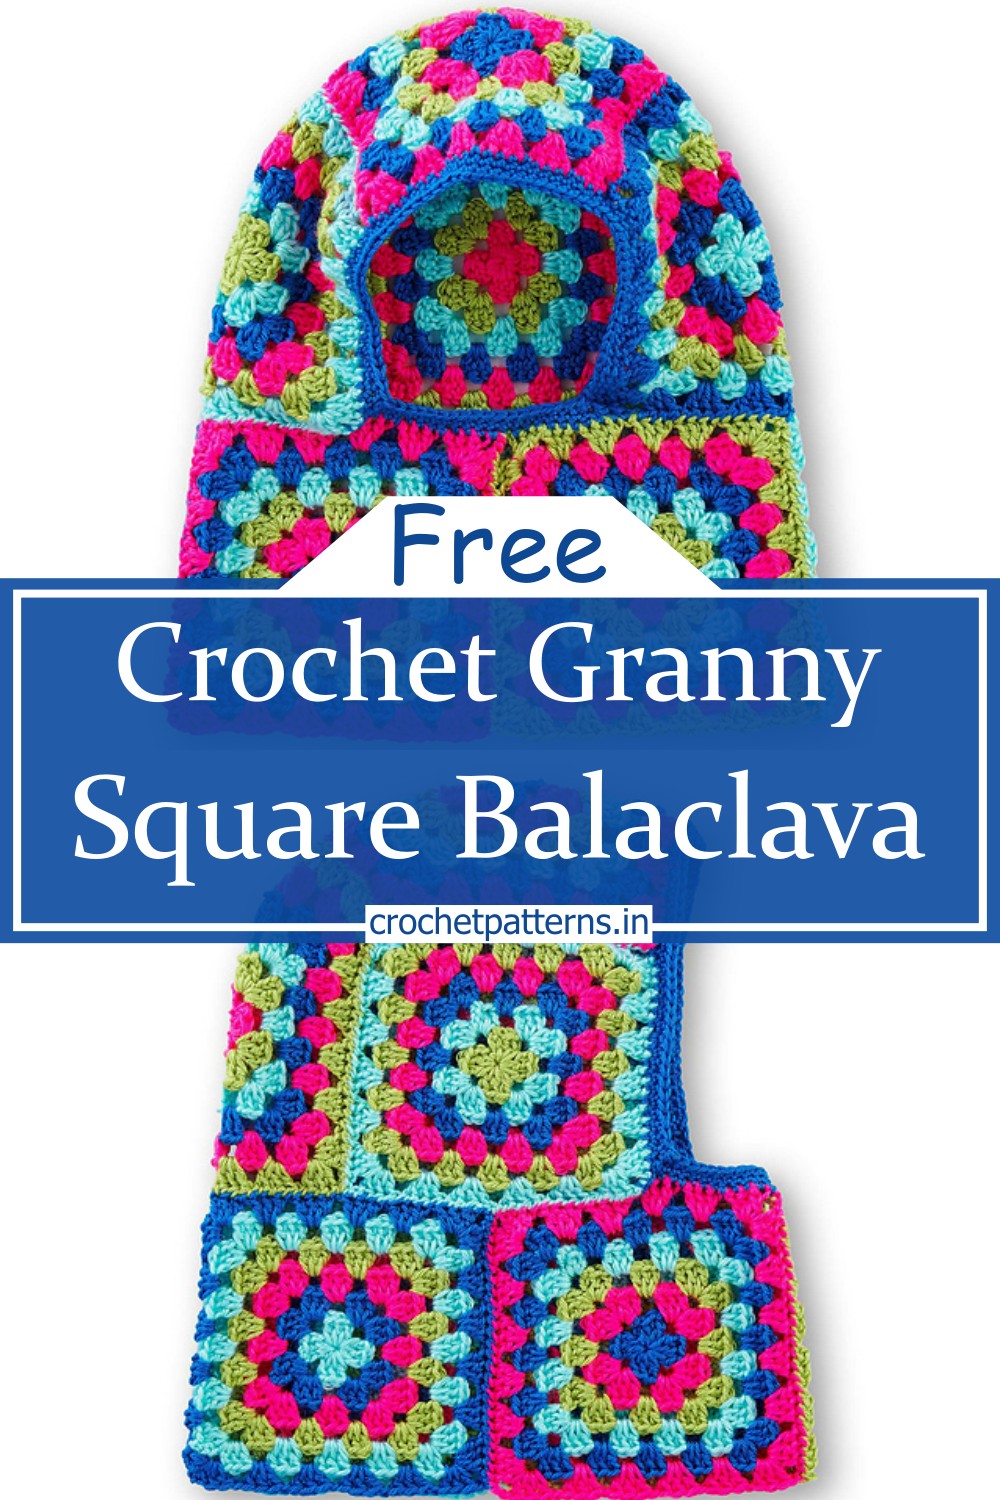 Granny Square Balaclava